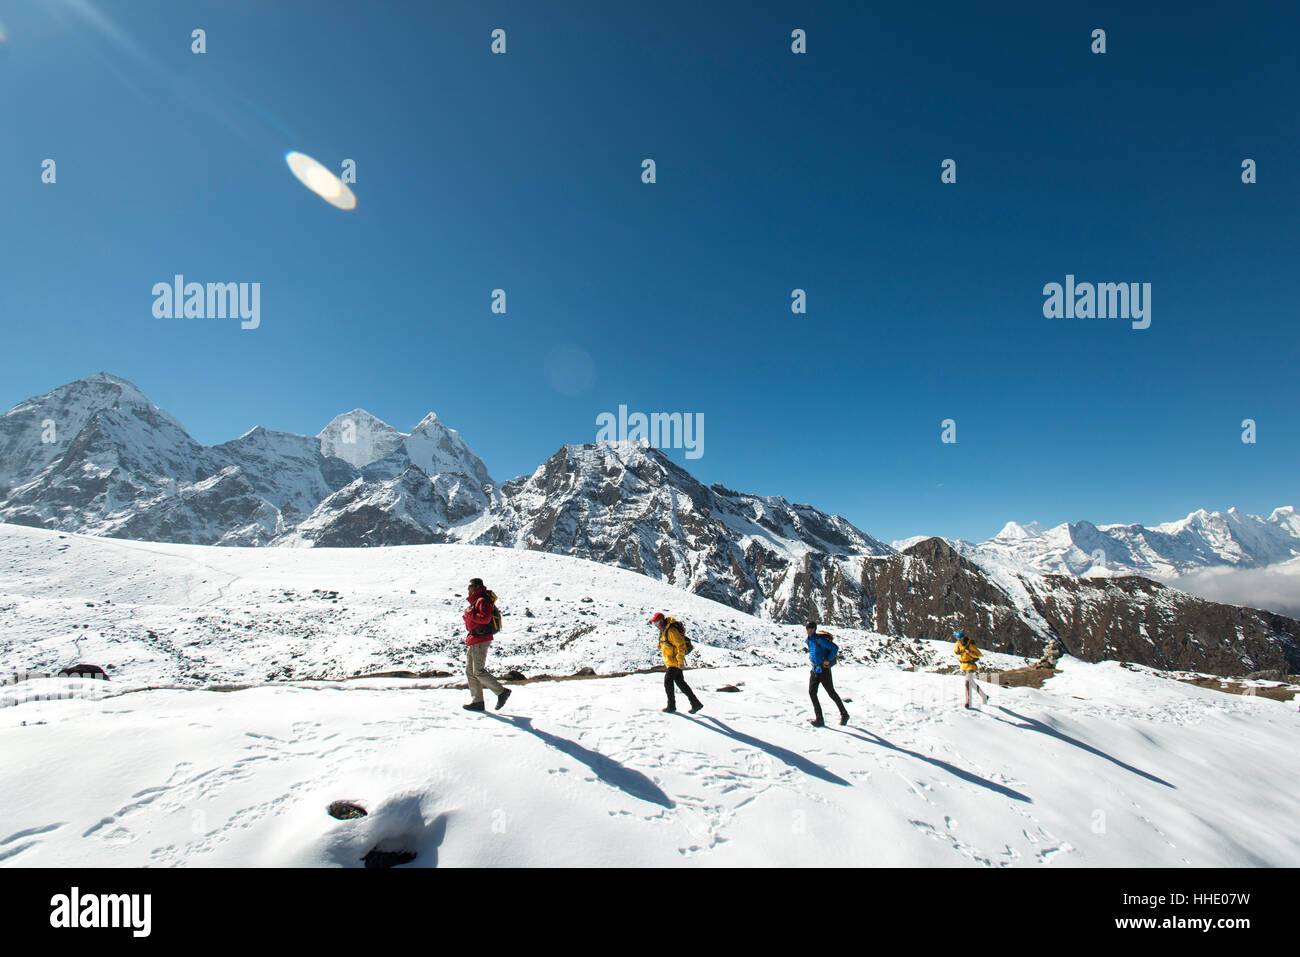 Ein Team von vier Bergsteigern Rückkehr zum Basislager nach dem Klettern Ama Dablam in Nepal Himalaya, Nepal Khumbu-Region Stockfoto